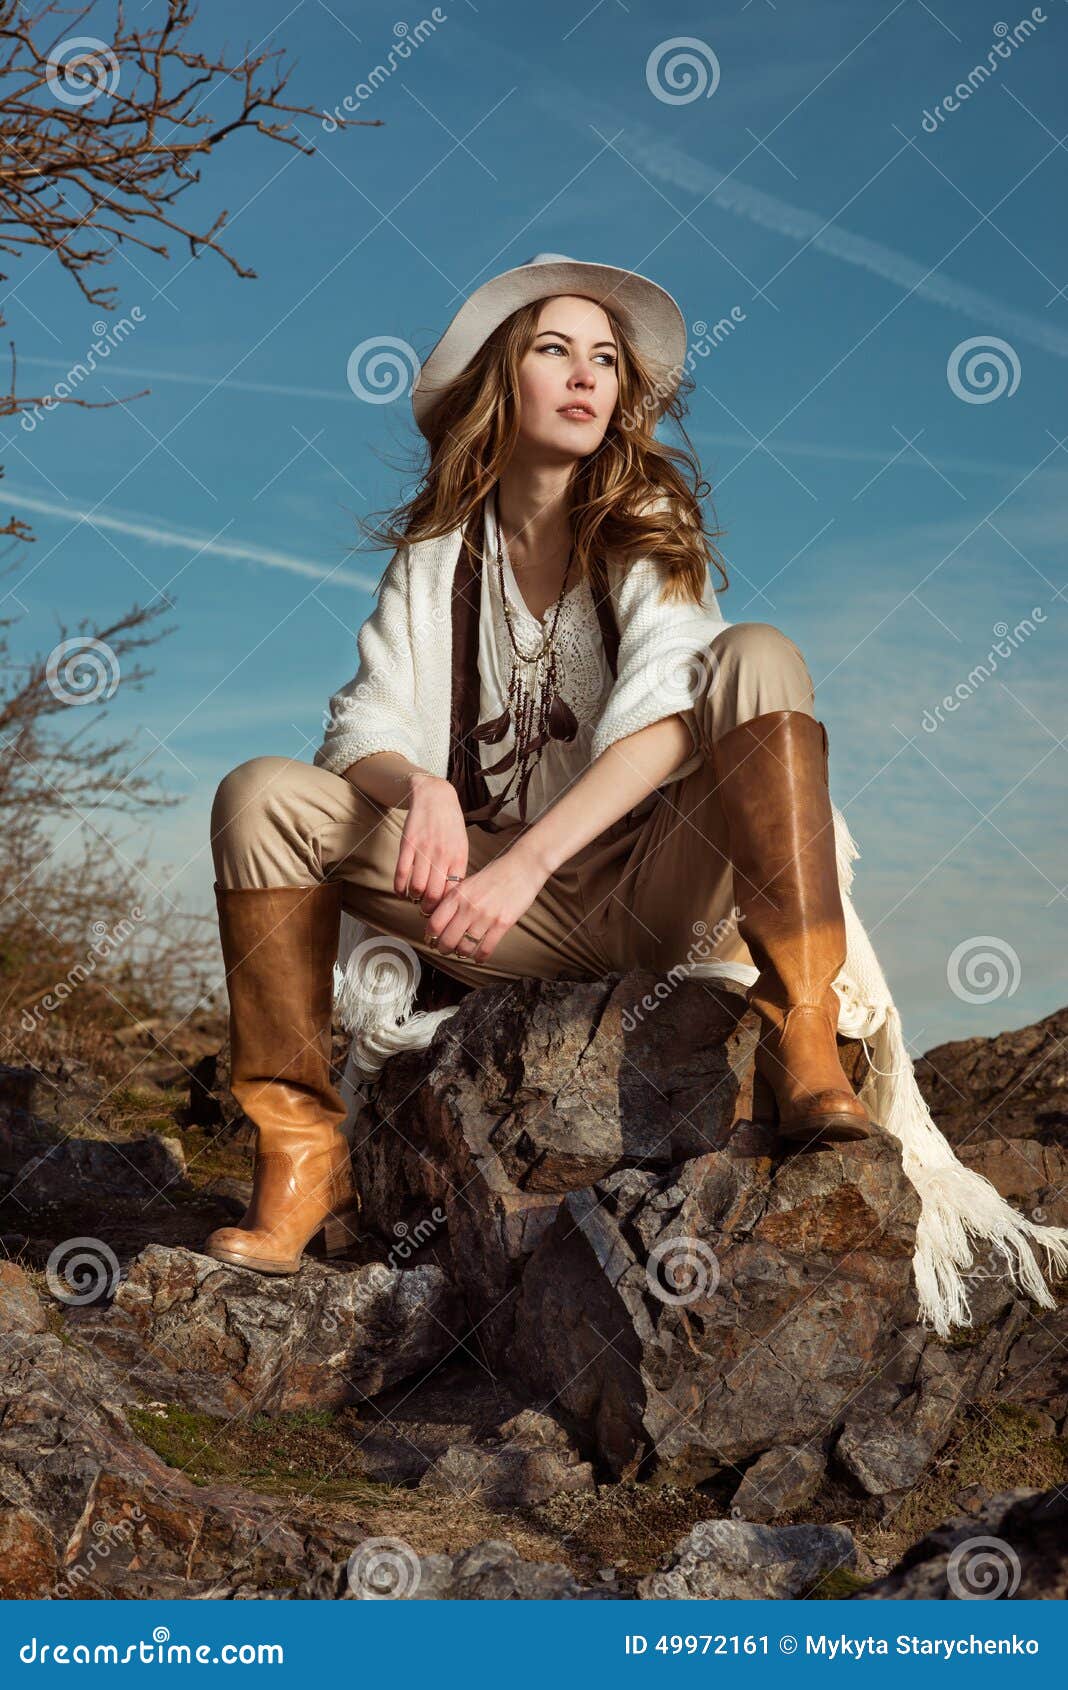 Mountain woman